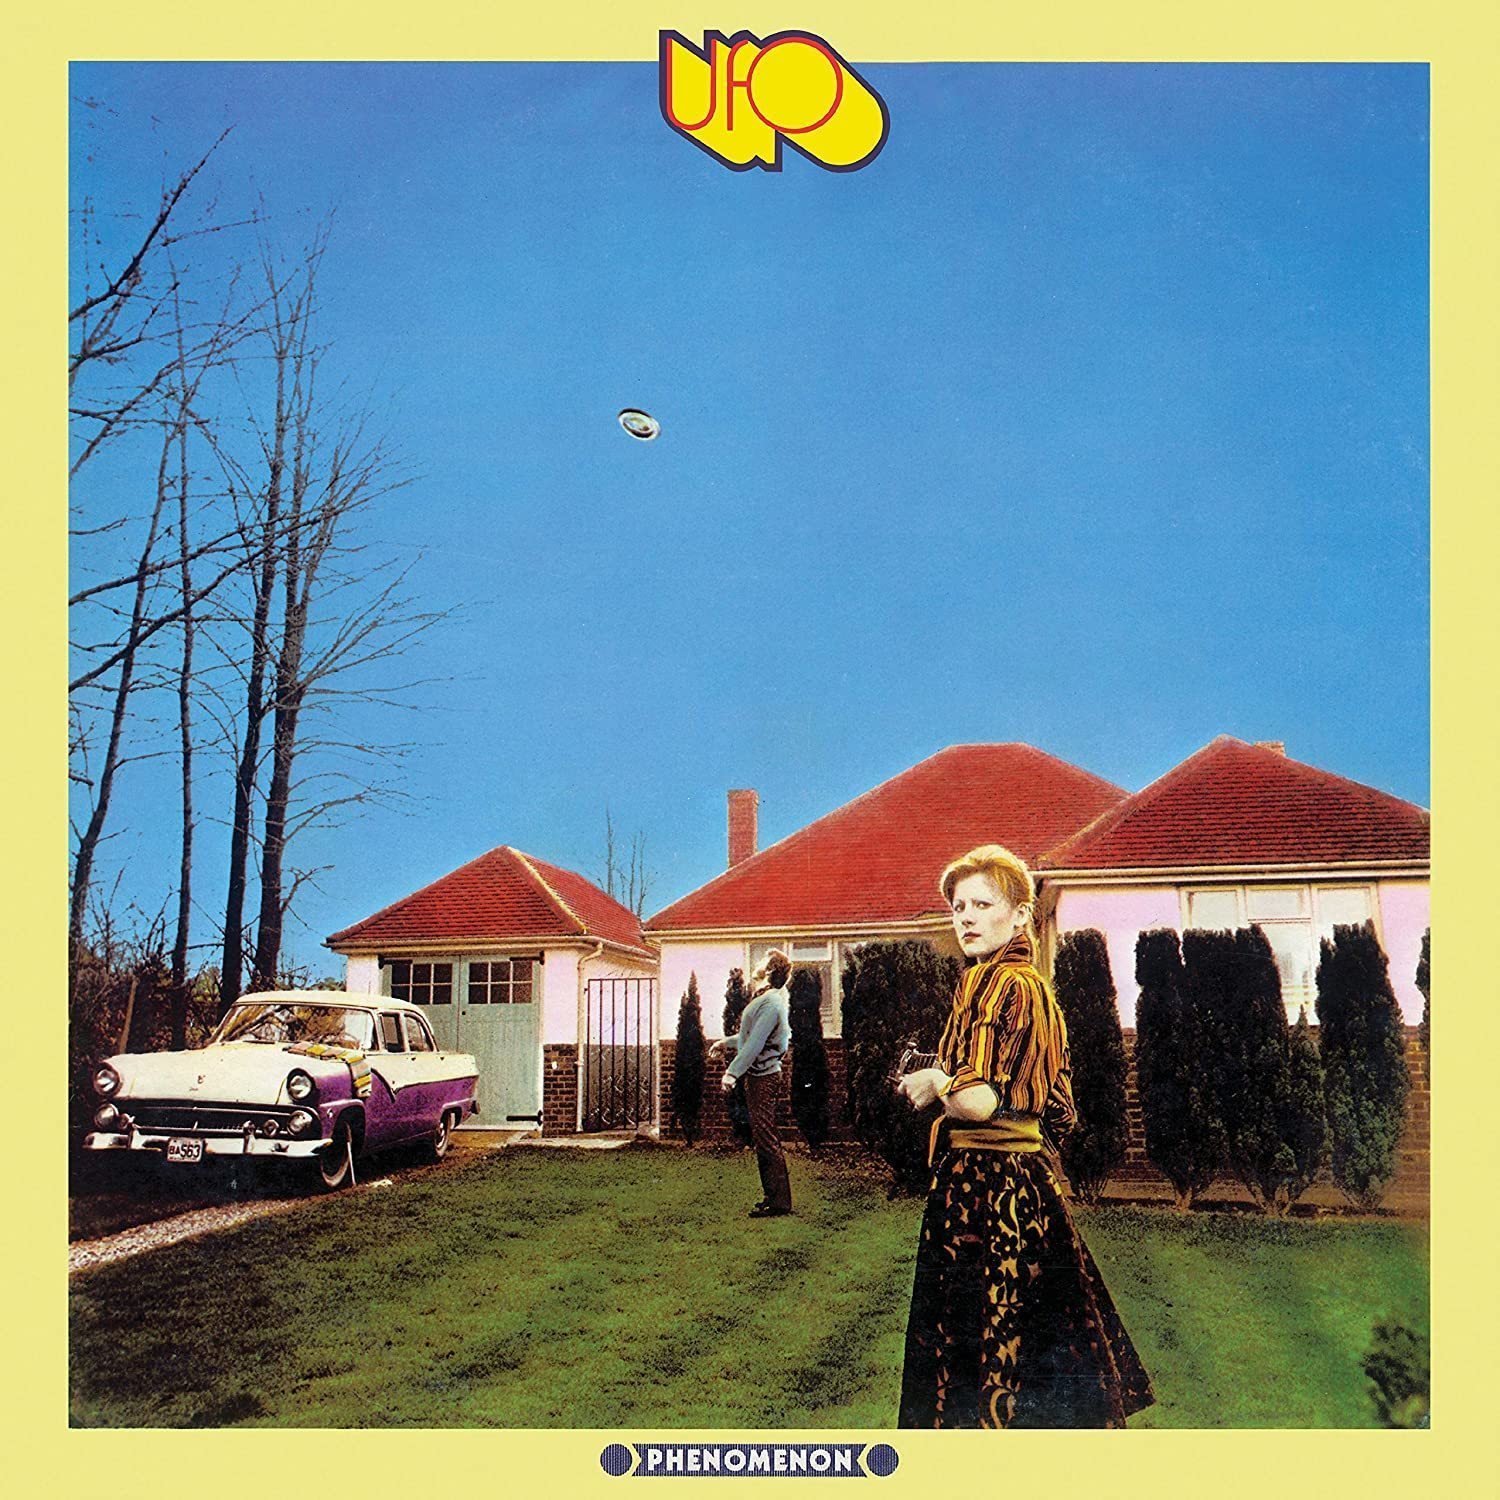 Vinylskiva UFO - Phenomenon (Deluxe Edition) (LP)